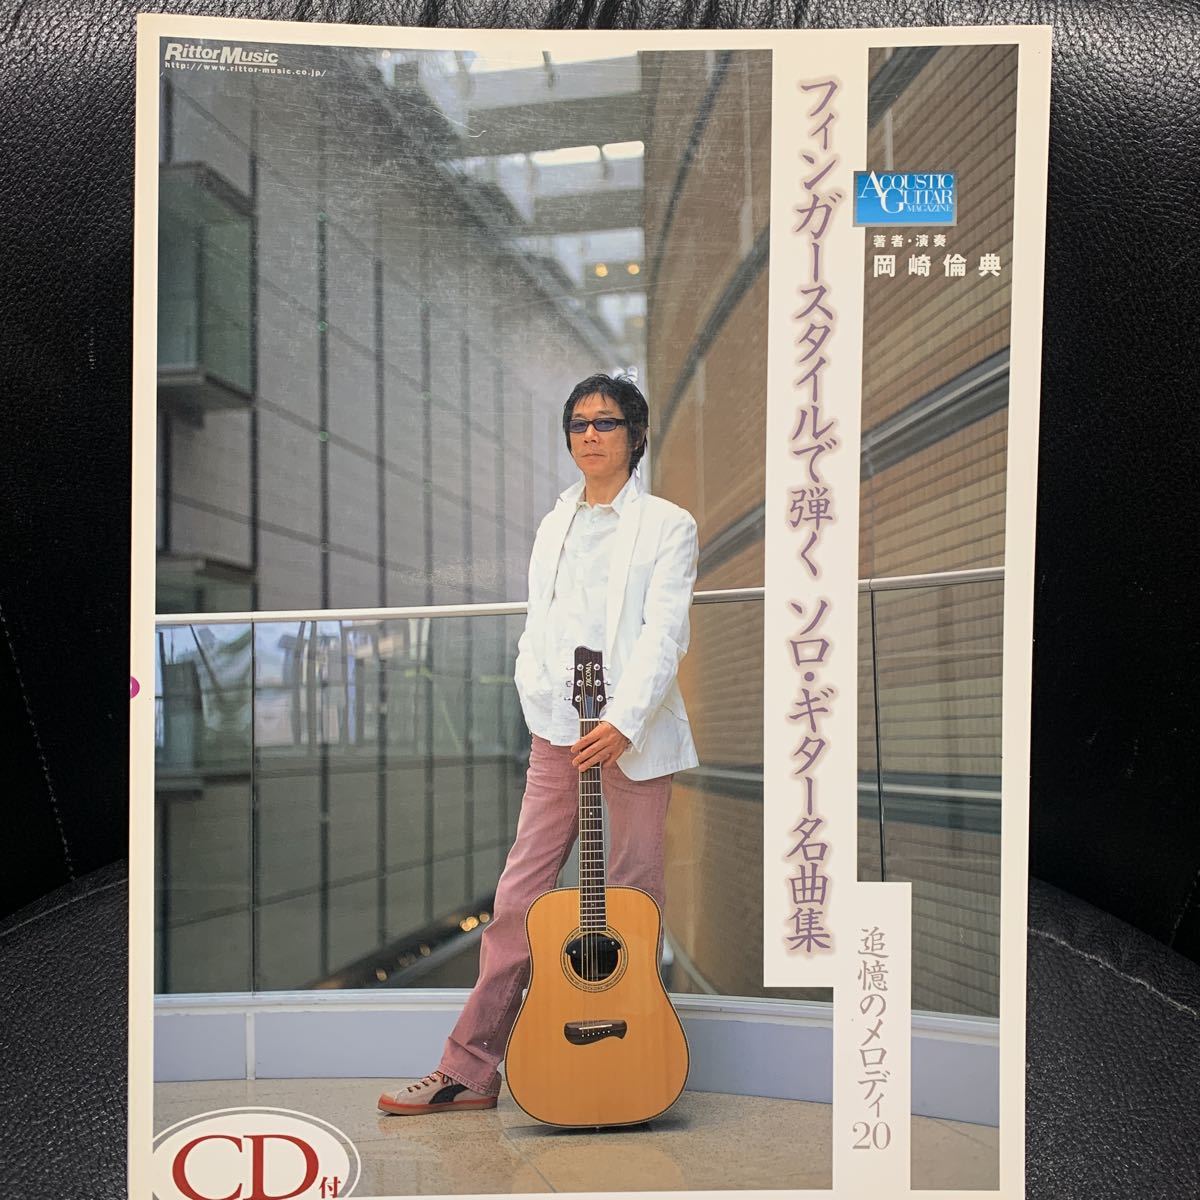 SC]Acoustic Guitar 岡崎倫典 スピリットダンス / Rinten Okazaki